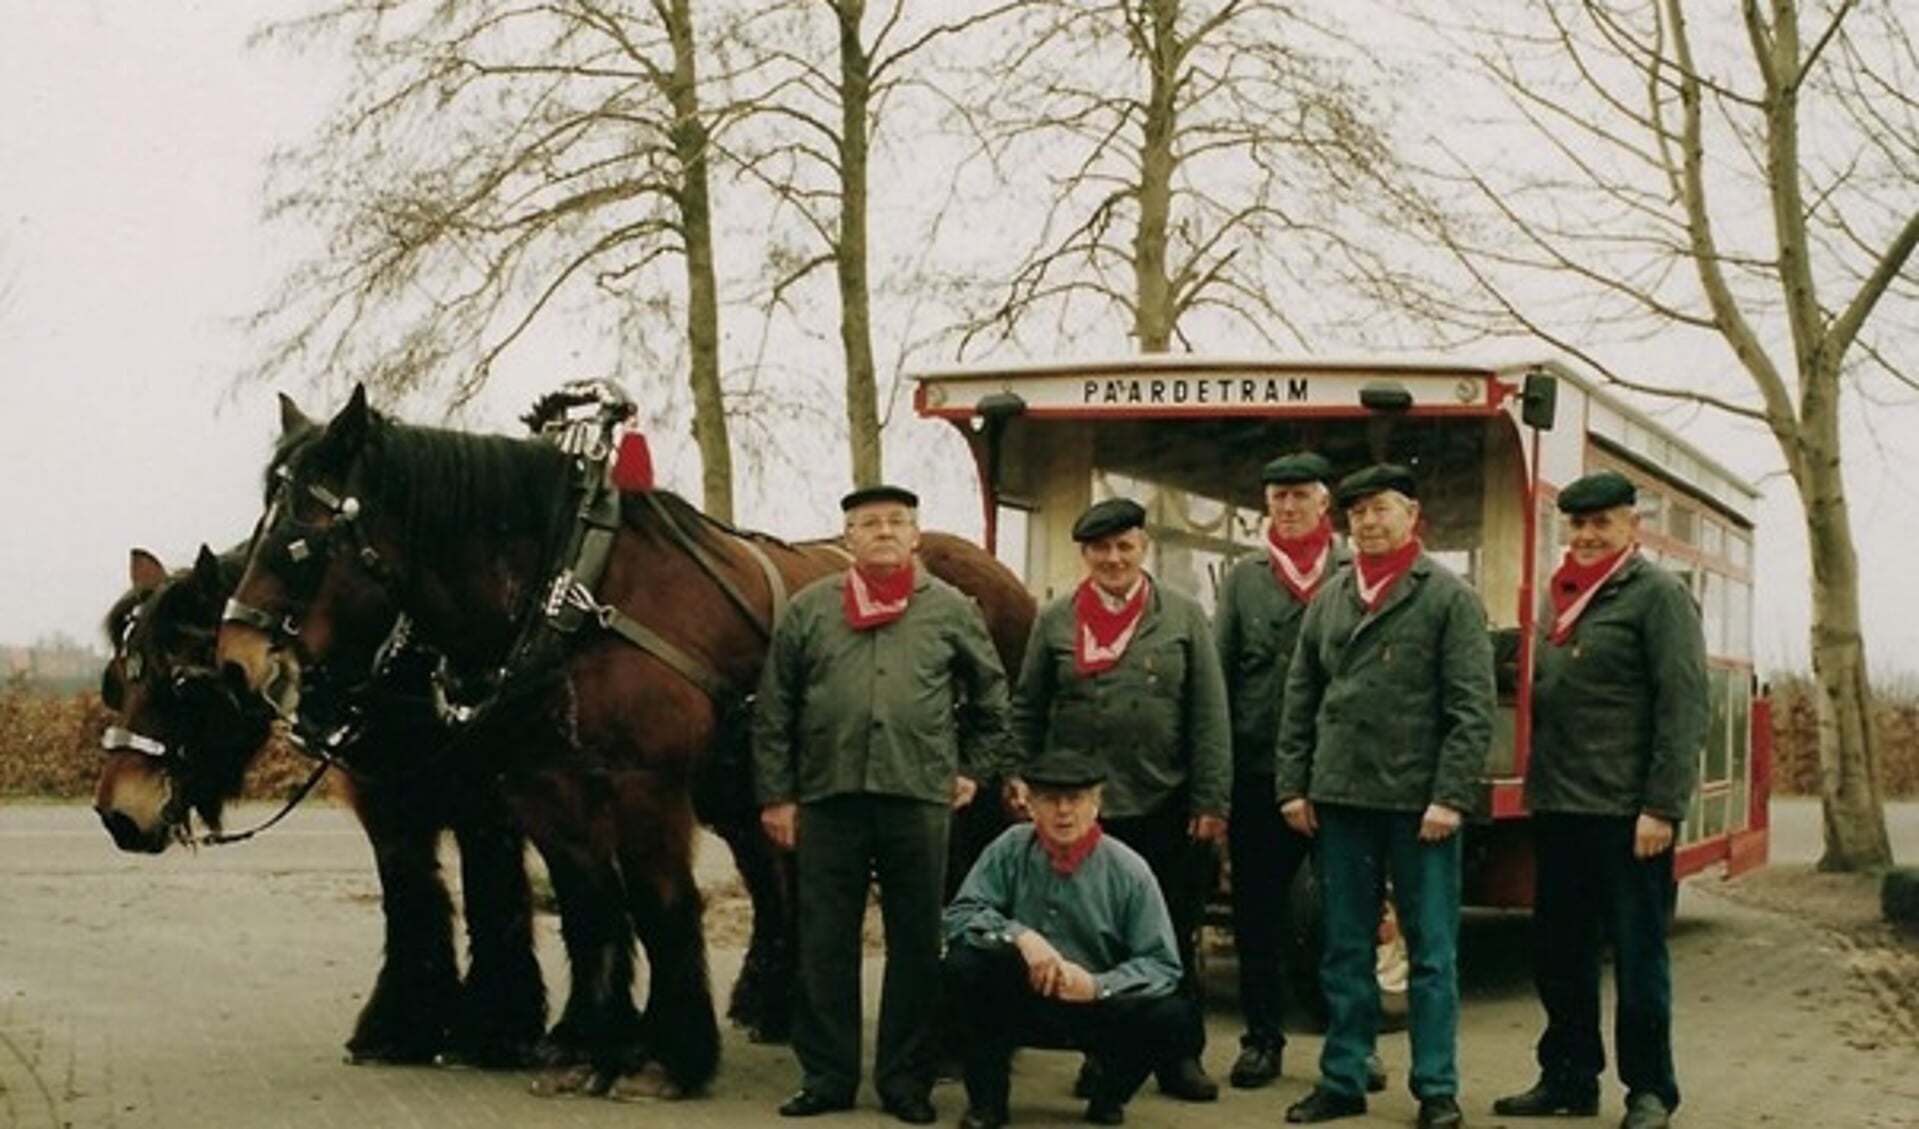 Voerlui Boerendag: Nico van Dongen, Christ Huijbregts, Jan Peeters, Frans Mathijssen, Jan van Alphen, en zittend Charles Luijten